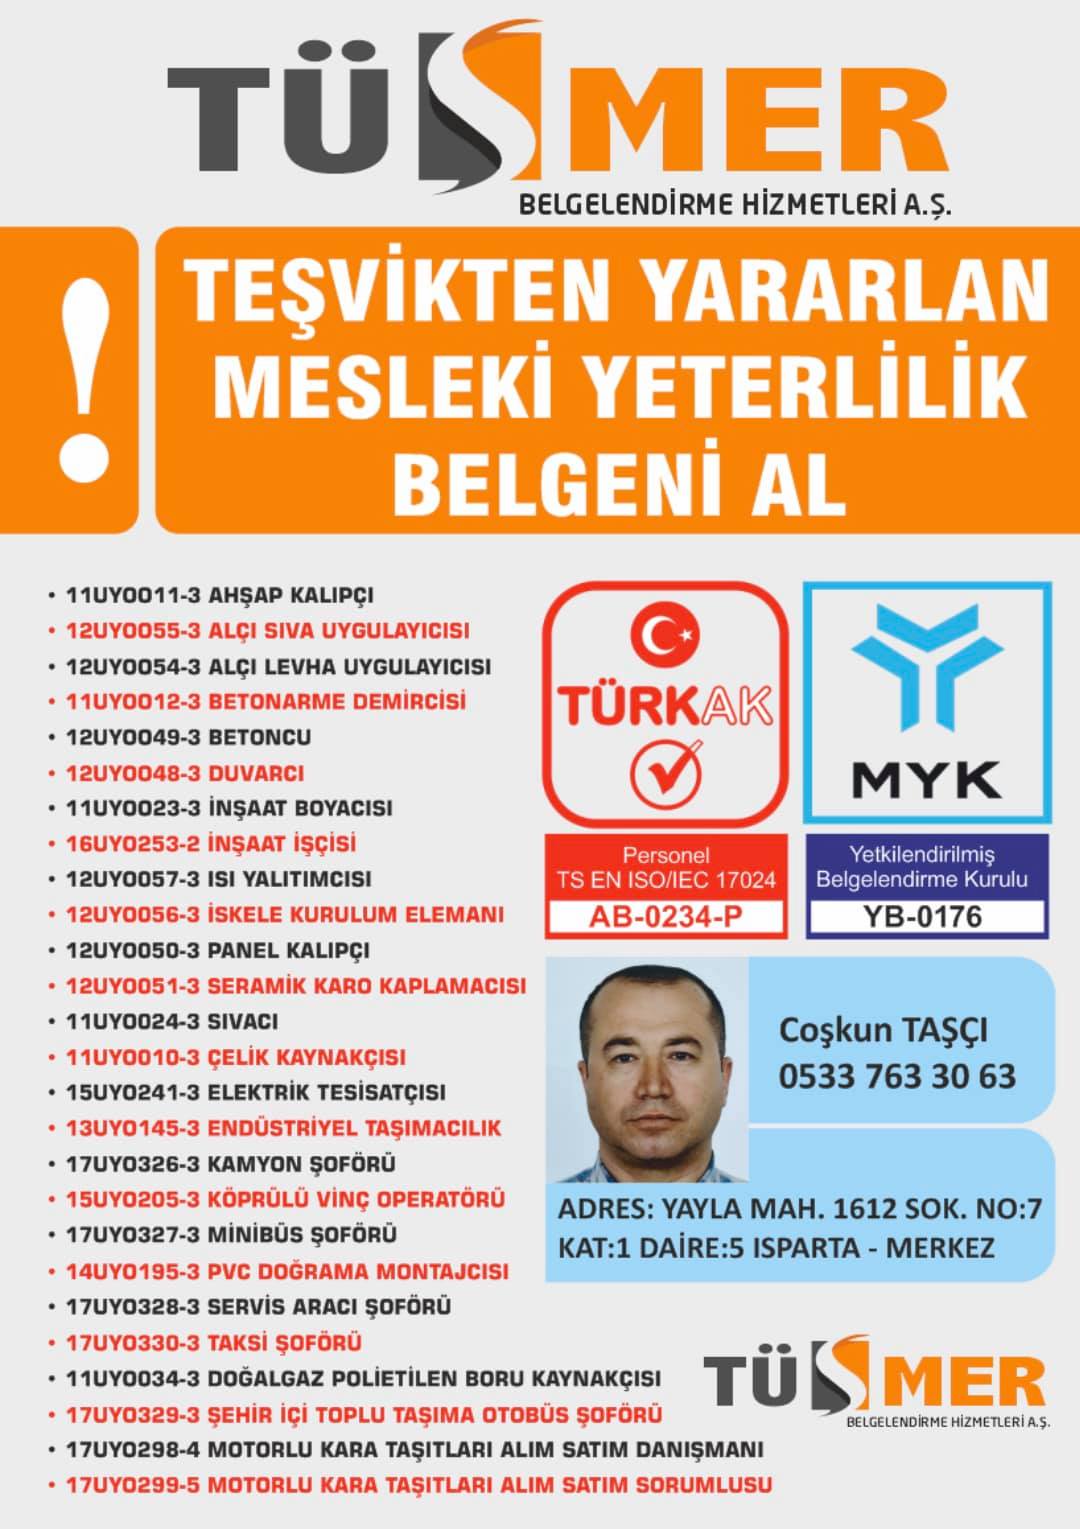 MYK MESLEKİ YETERLİLİK BELGESİ Koşuyolu Kadıköy İstanbul